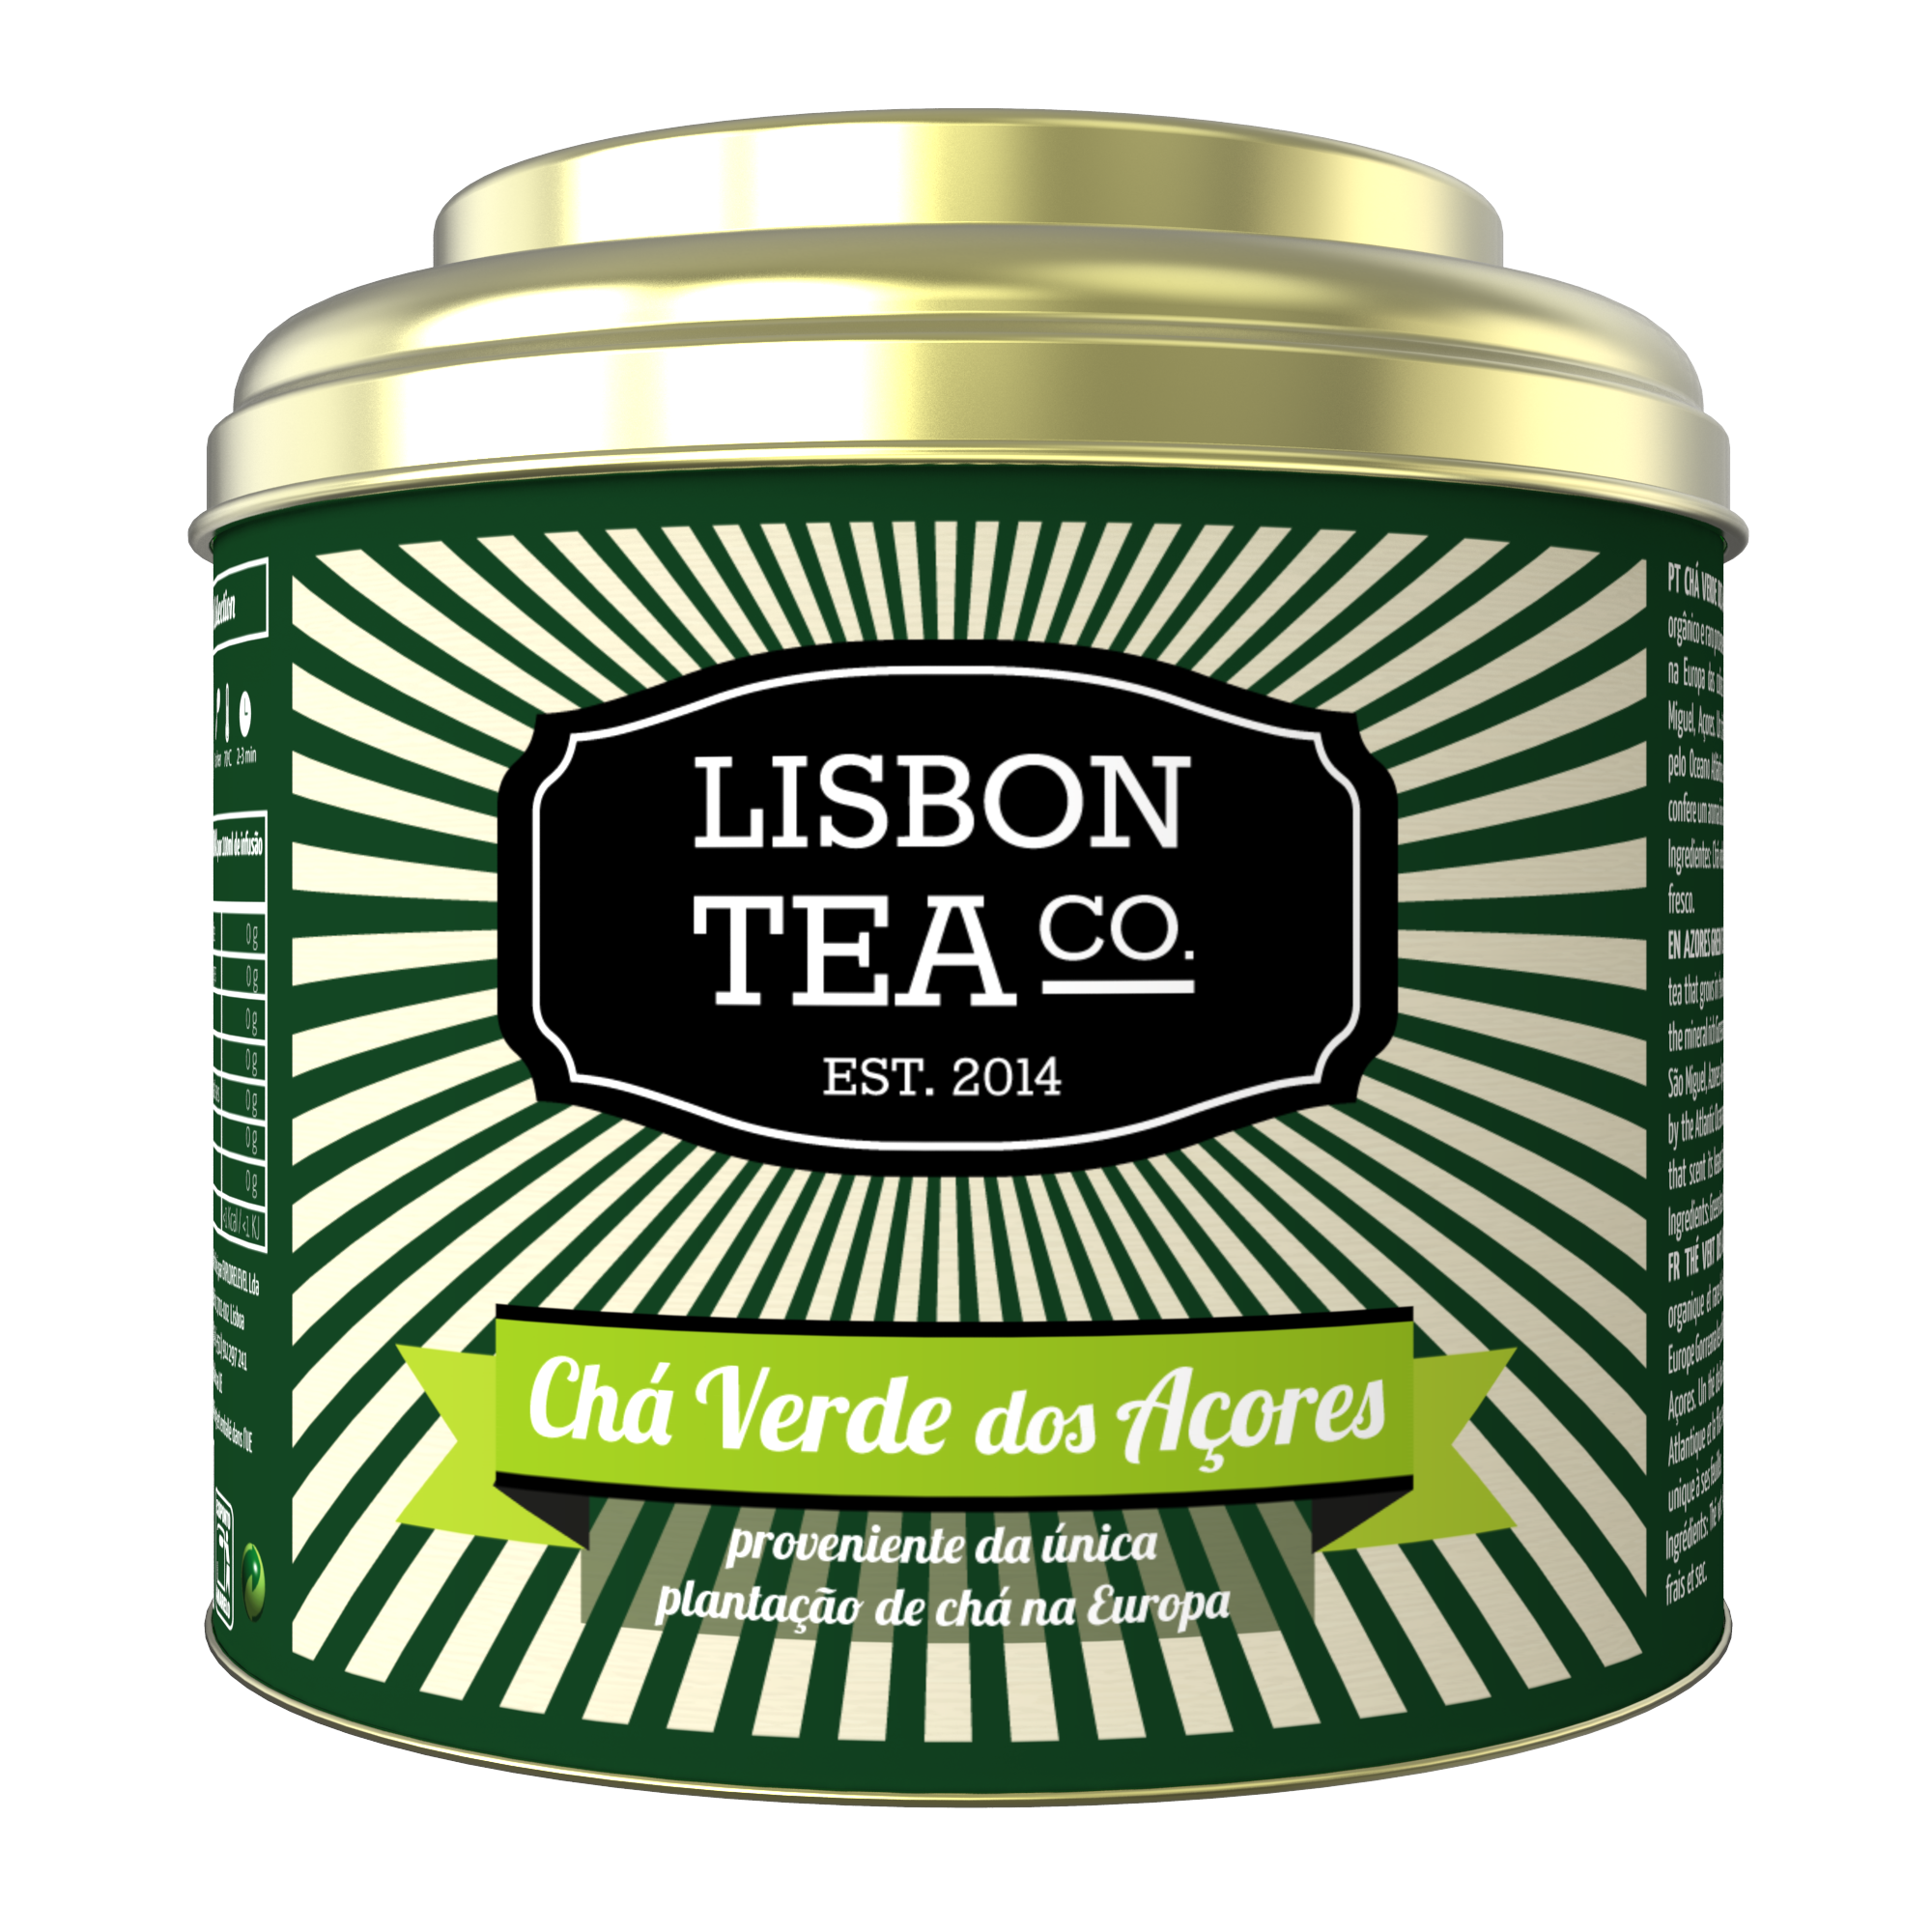 Chá Verde dos Açores